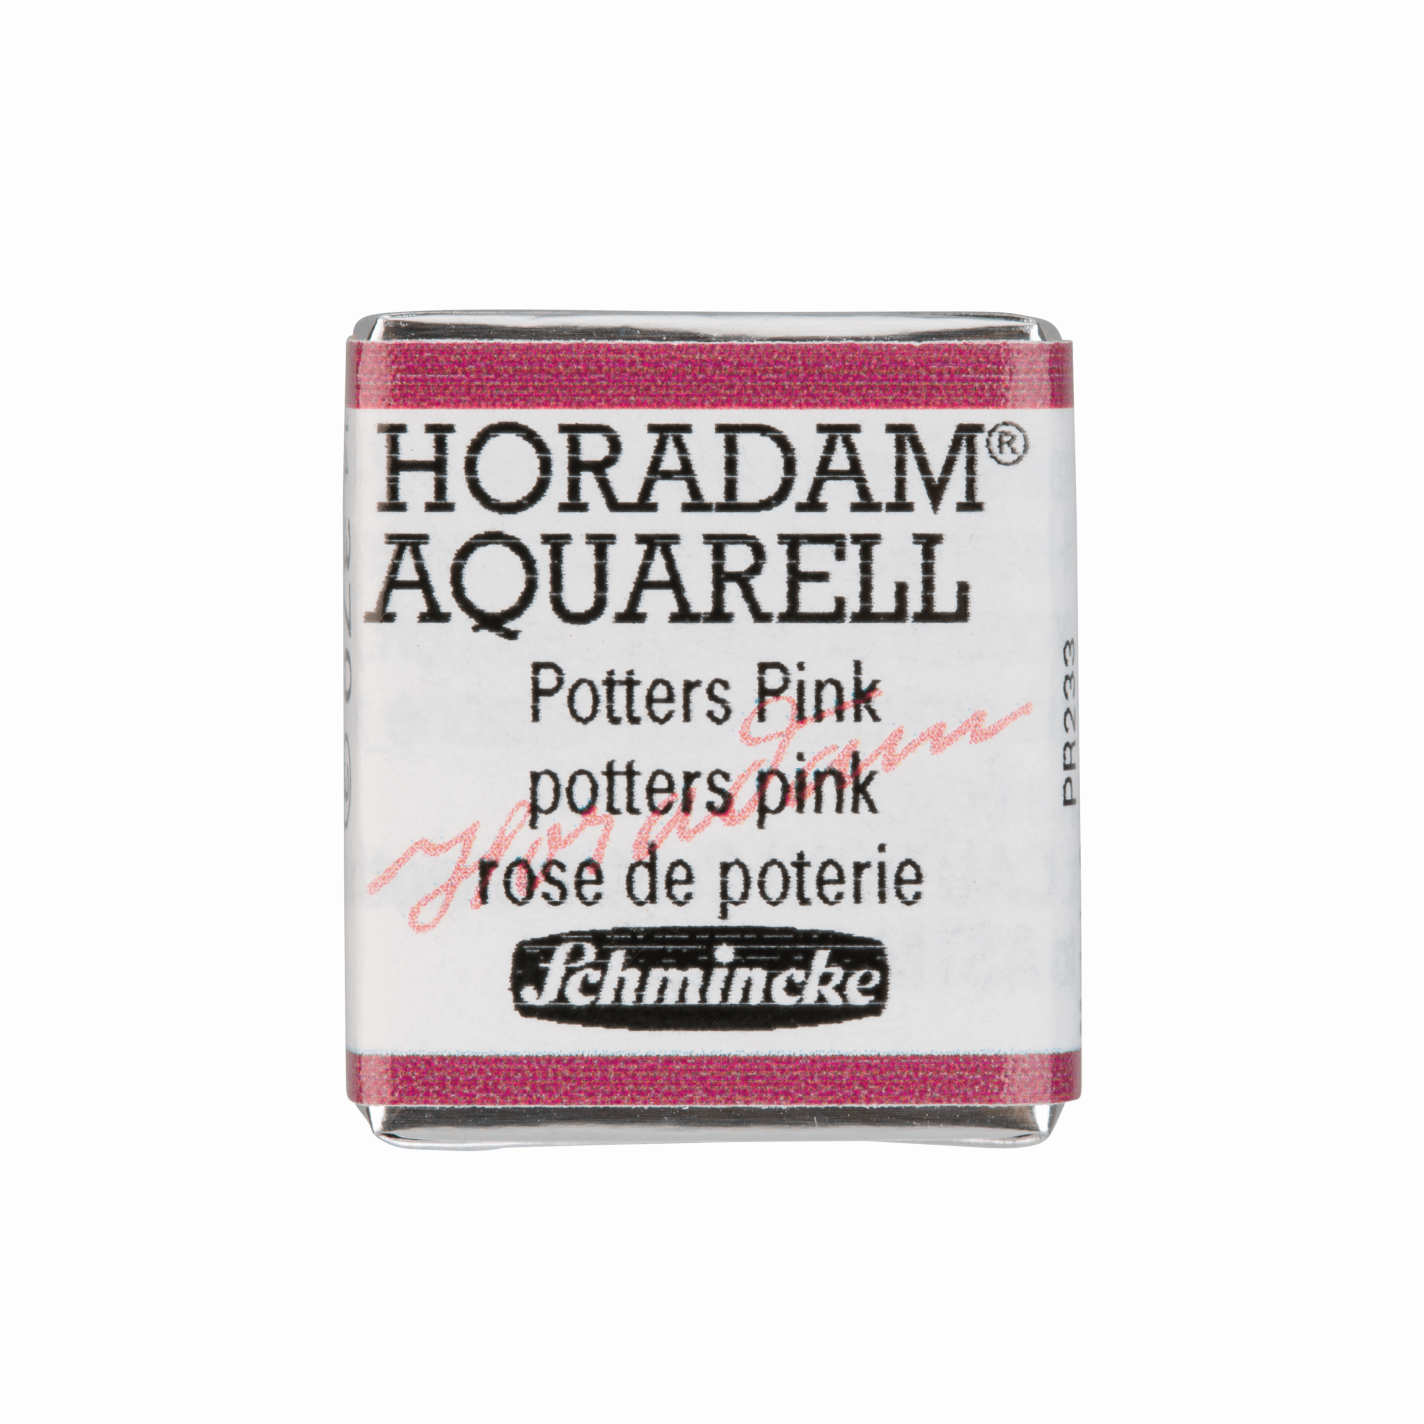 Schmincke Horadam Aquarell pans 1/2 pan Potters Pink